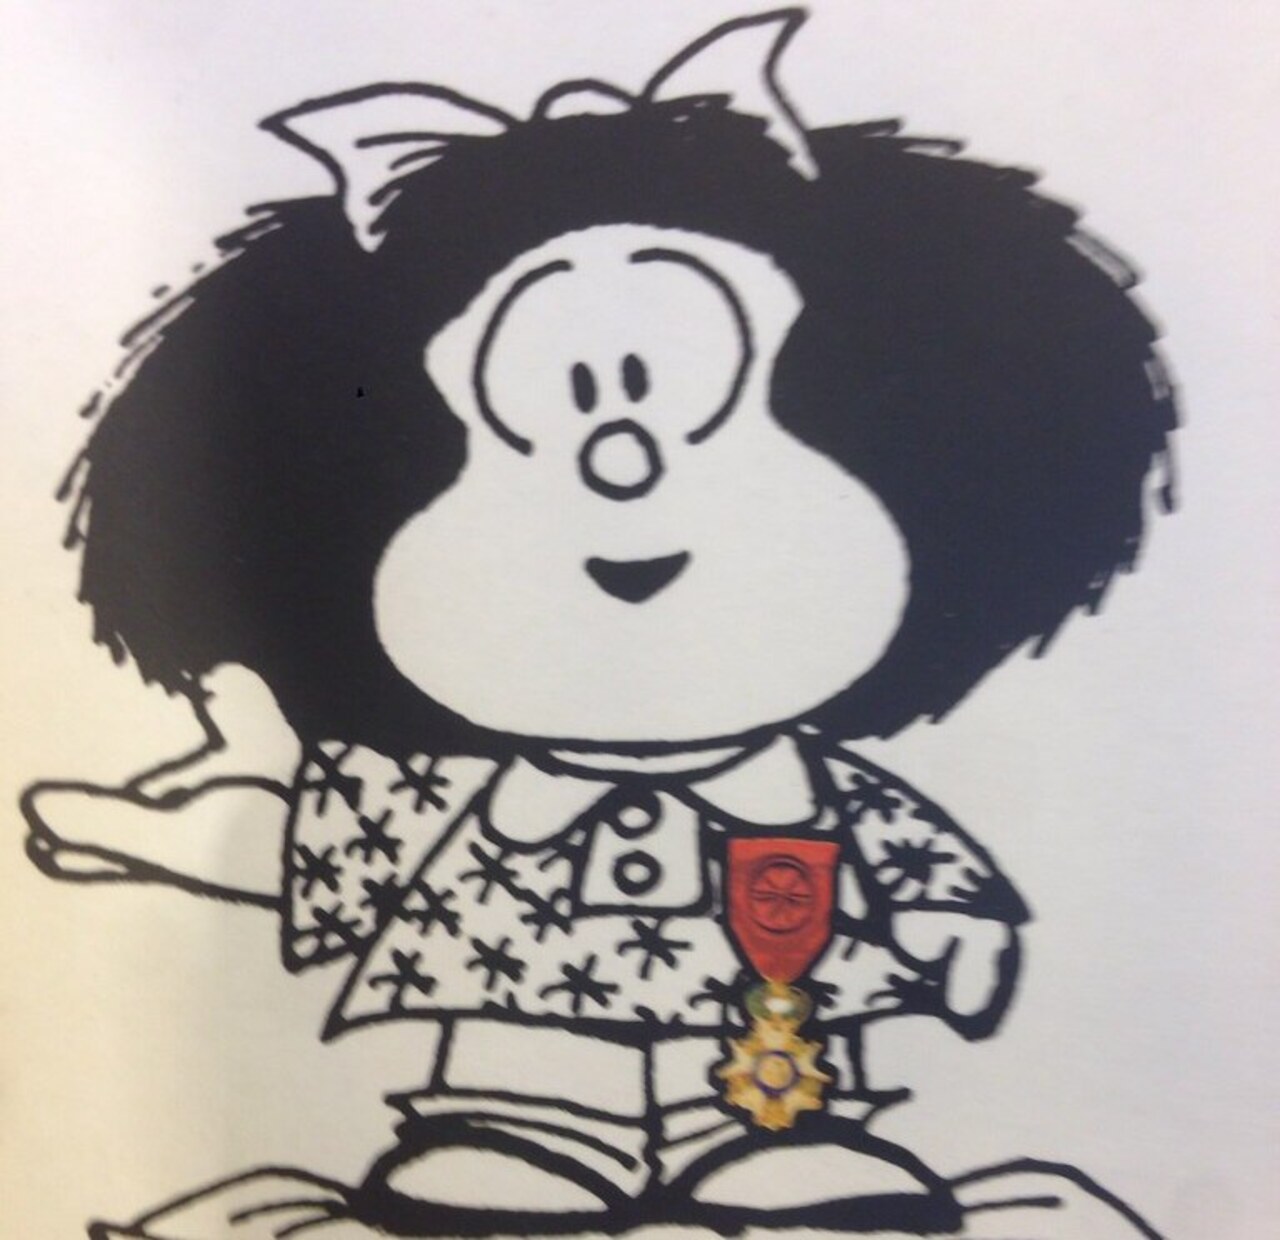 Addio al fumettista Quino: era l’inventore di Mafalda